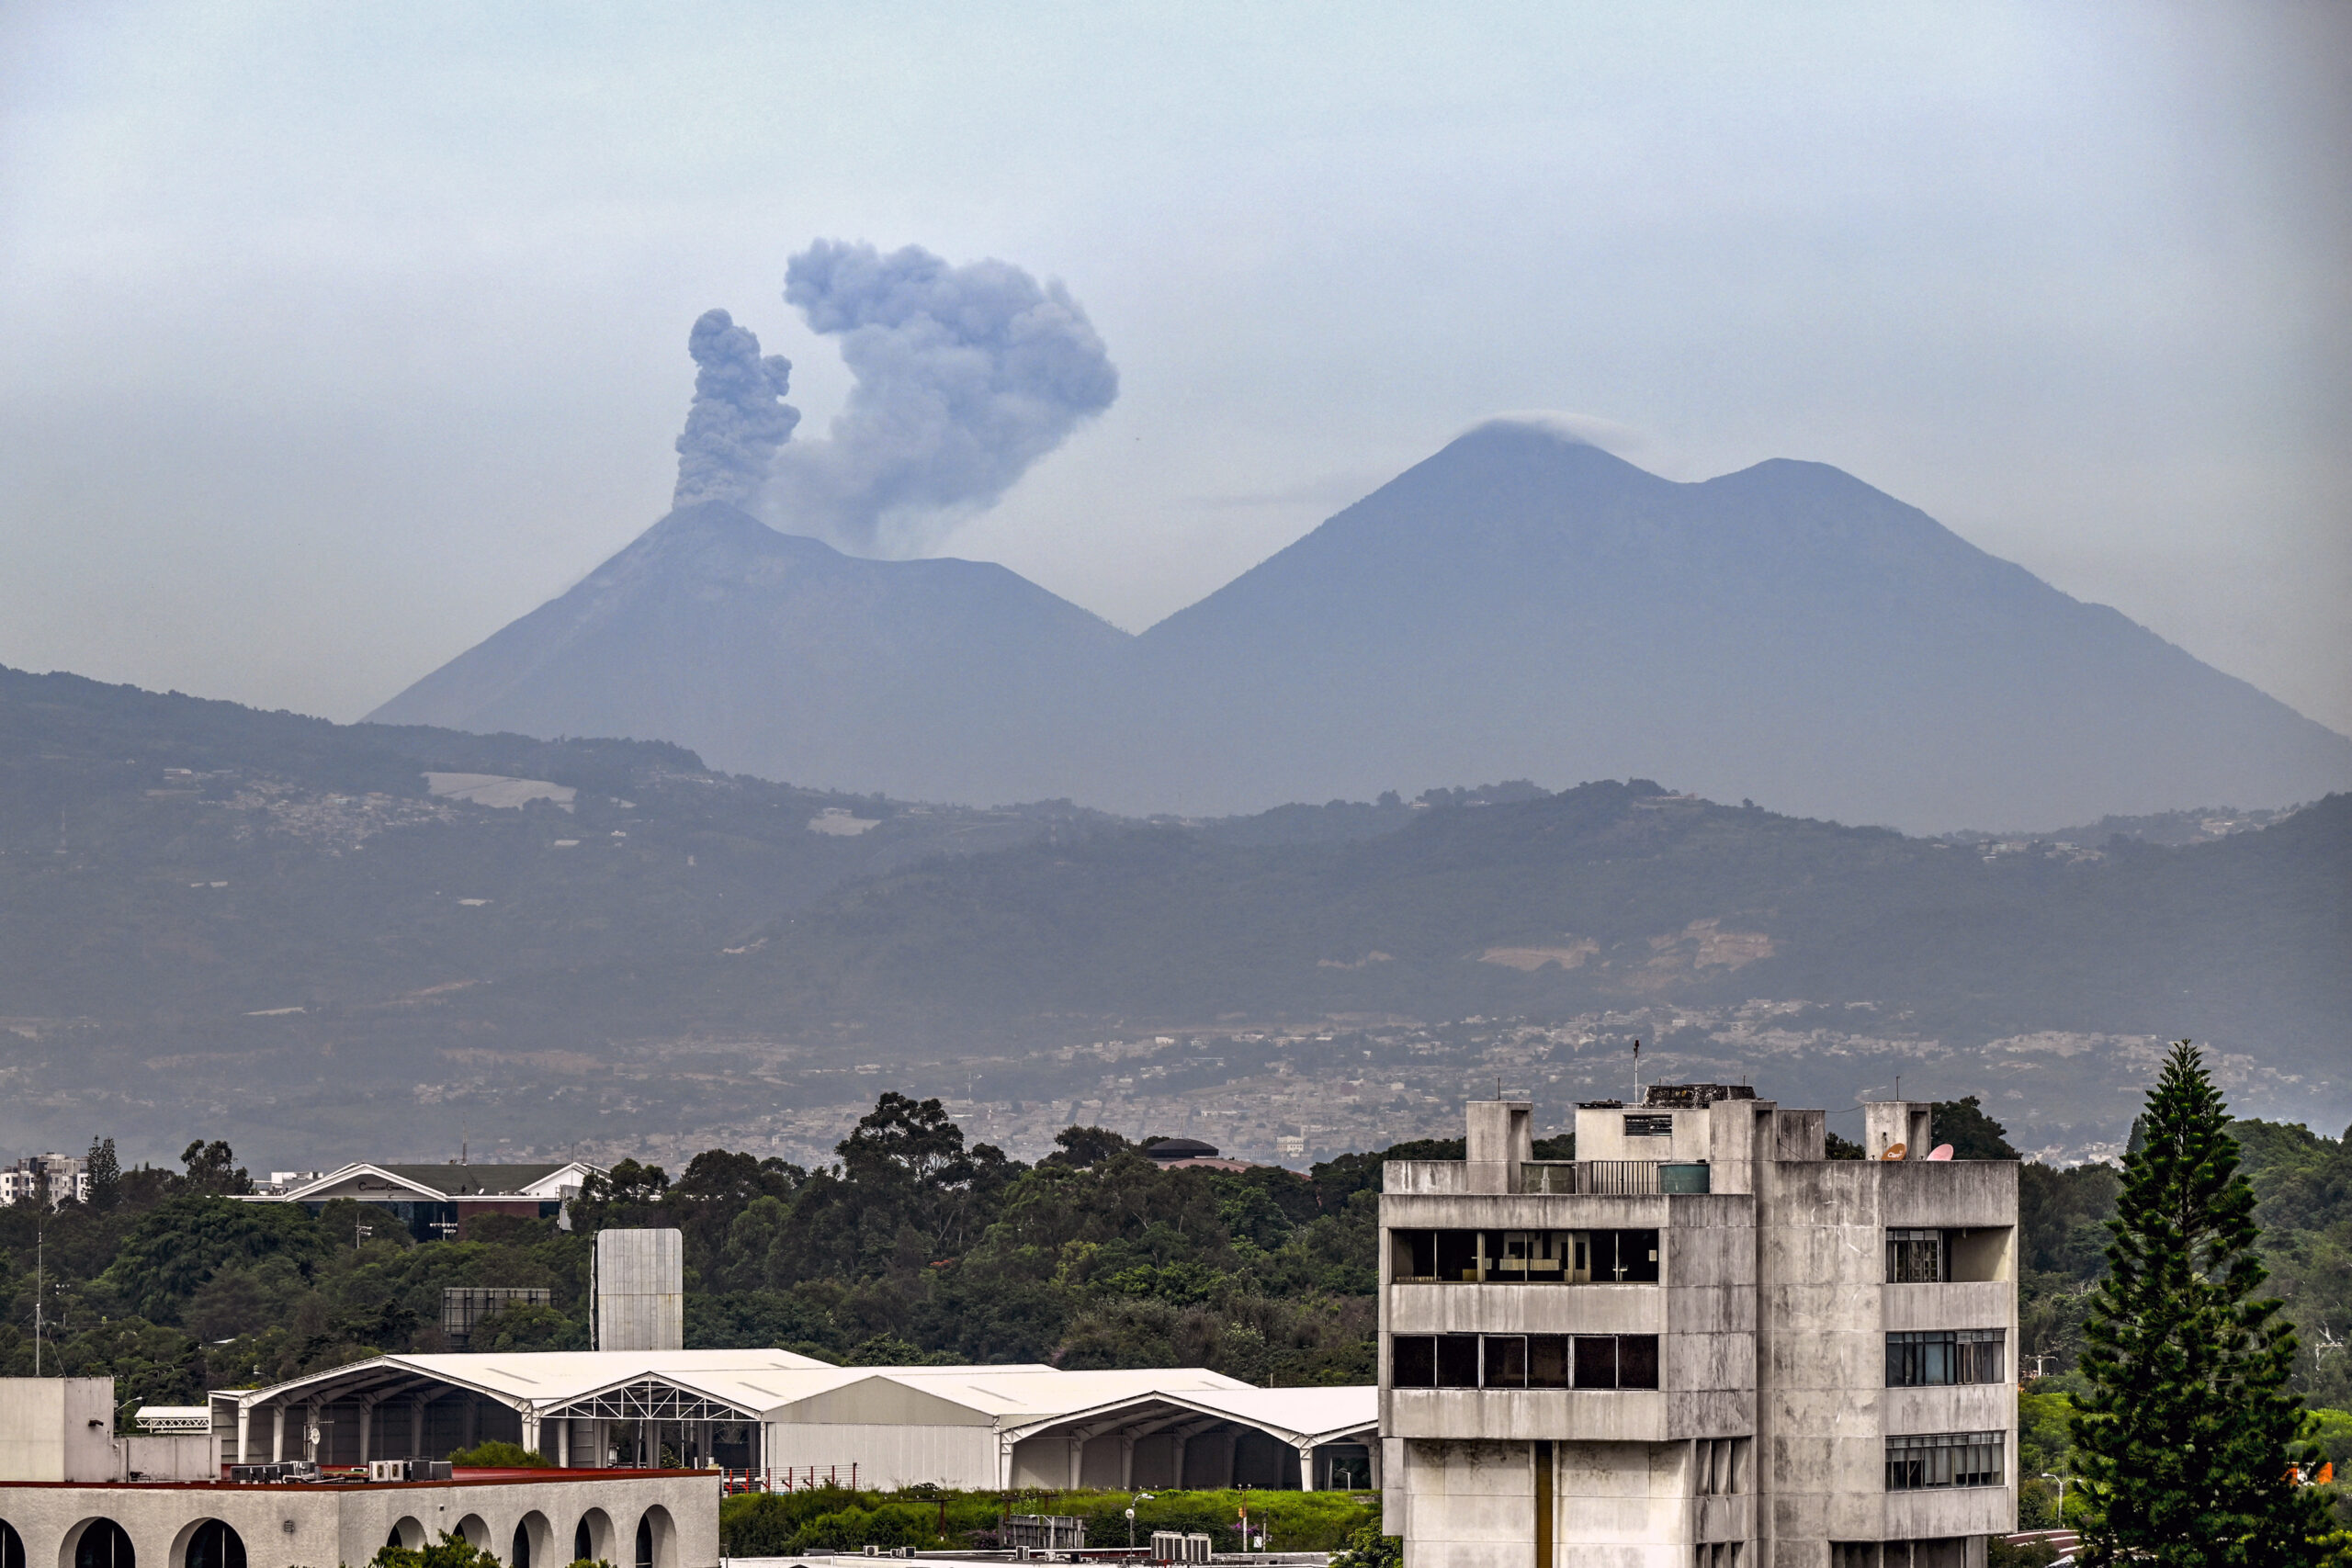 Volcano rumblings prompt air traffic alert in Guatemala